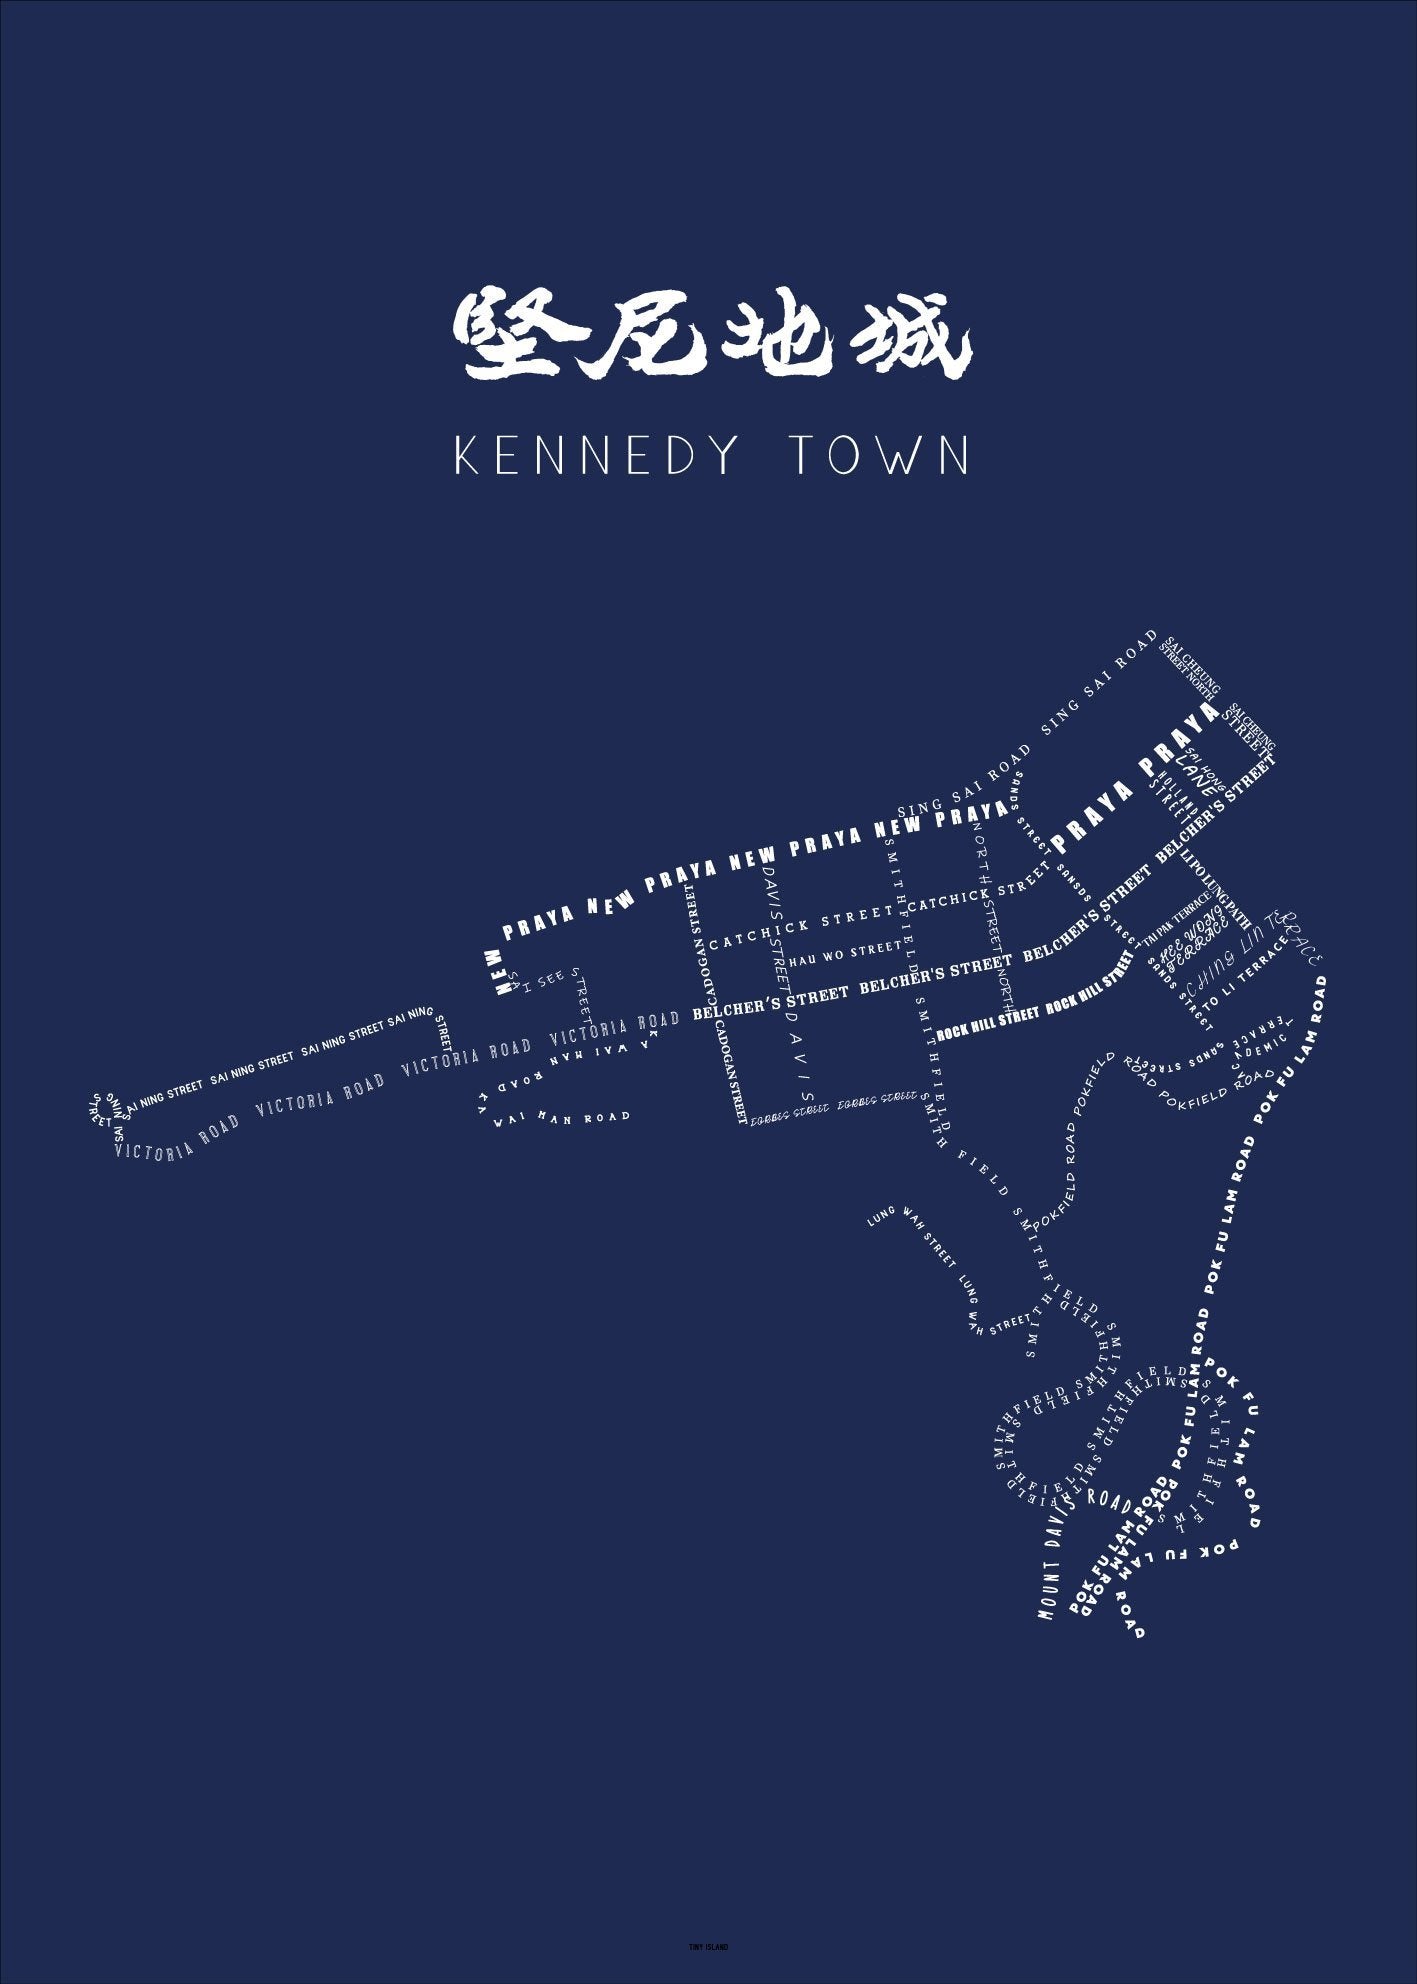 Kennedy Town Navy - tinyislandmaps